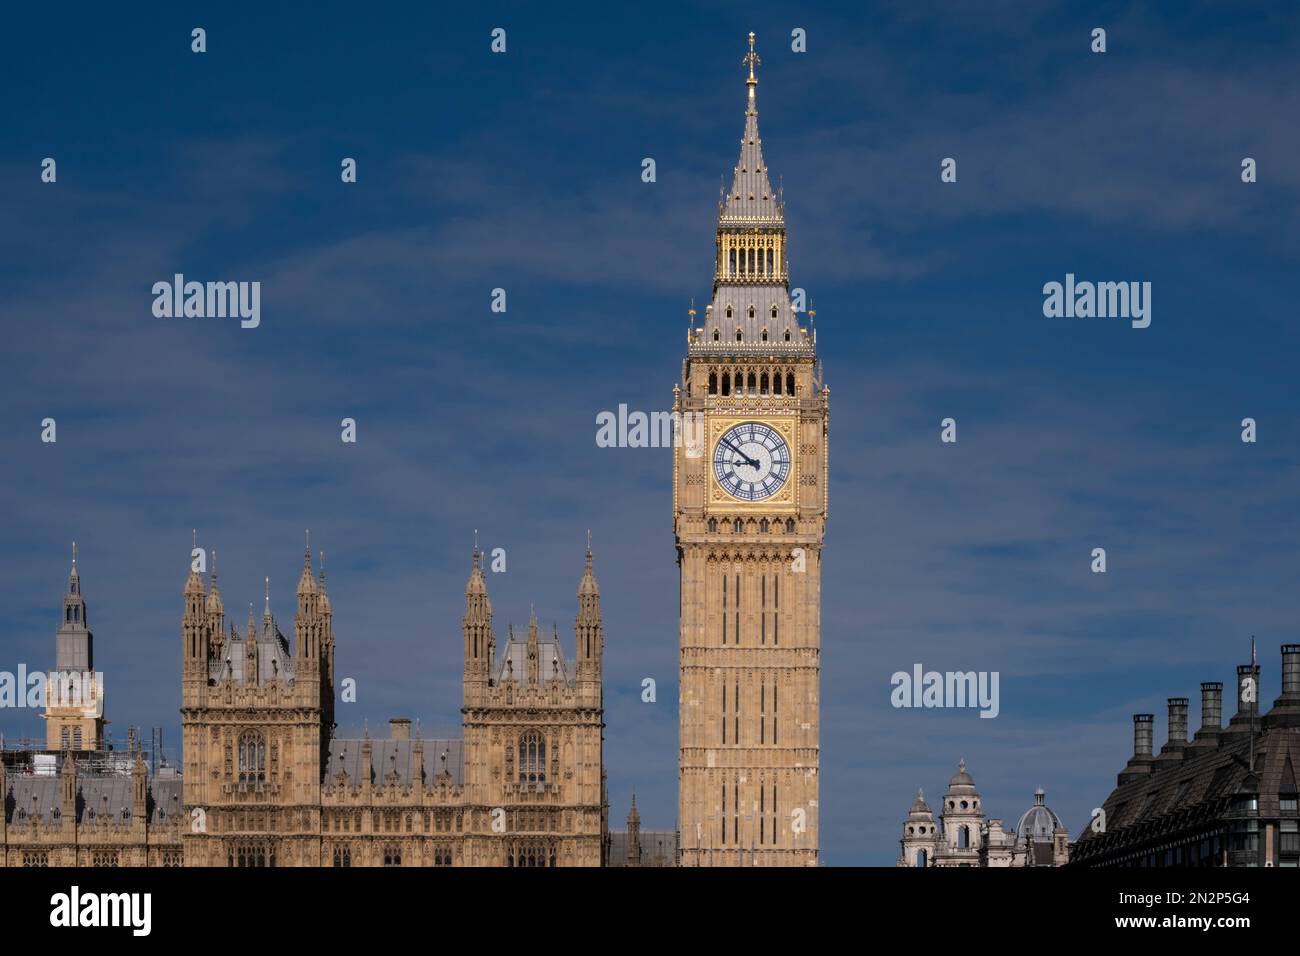 Chambres du Parlement (Palais de Westminster) et tour d'horloge de Big Ben. Rivière Thames. Parlement du 19th siècle par Charles Barry et Augustus Pugin. Banque D'Images